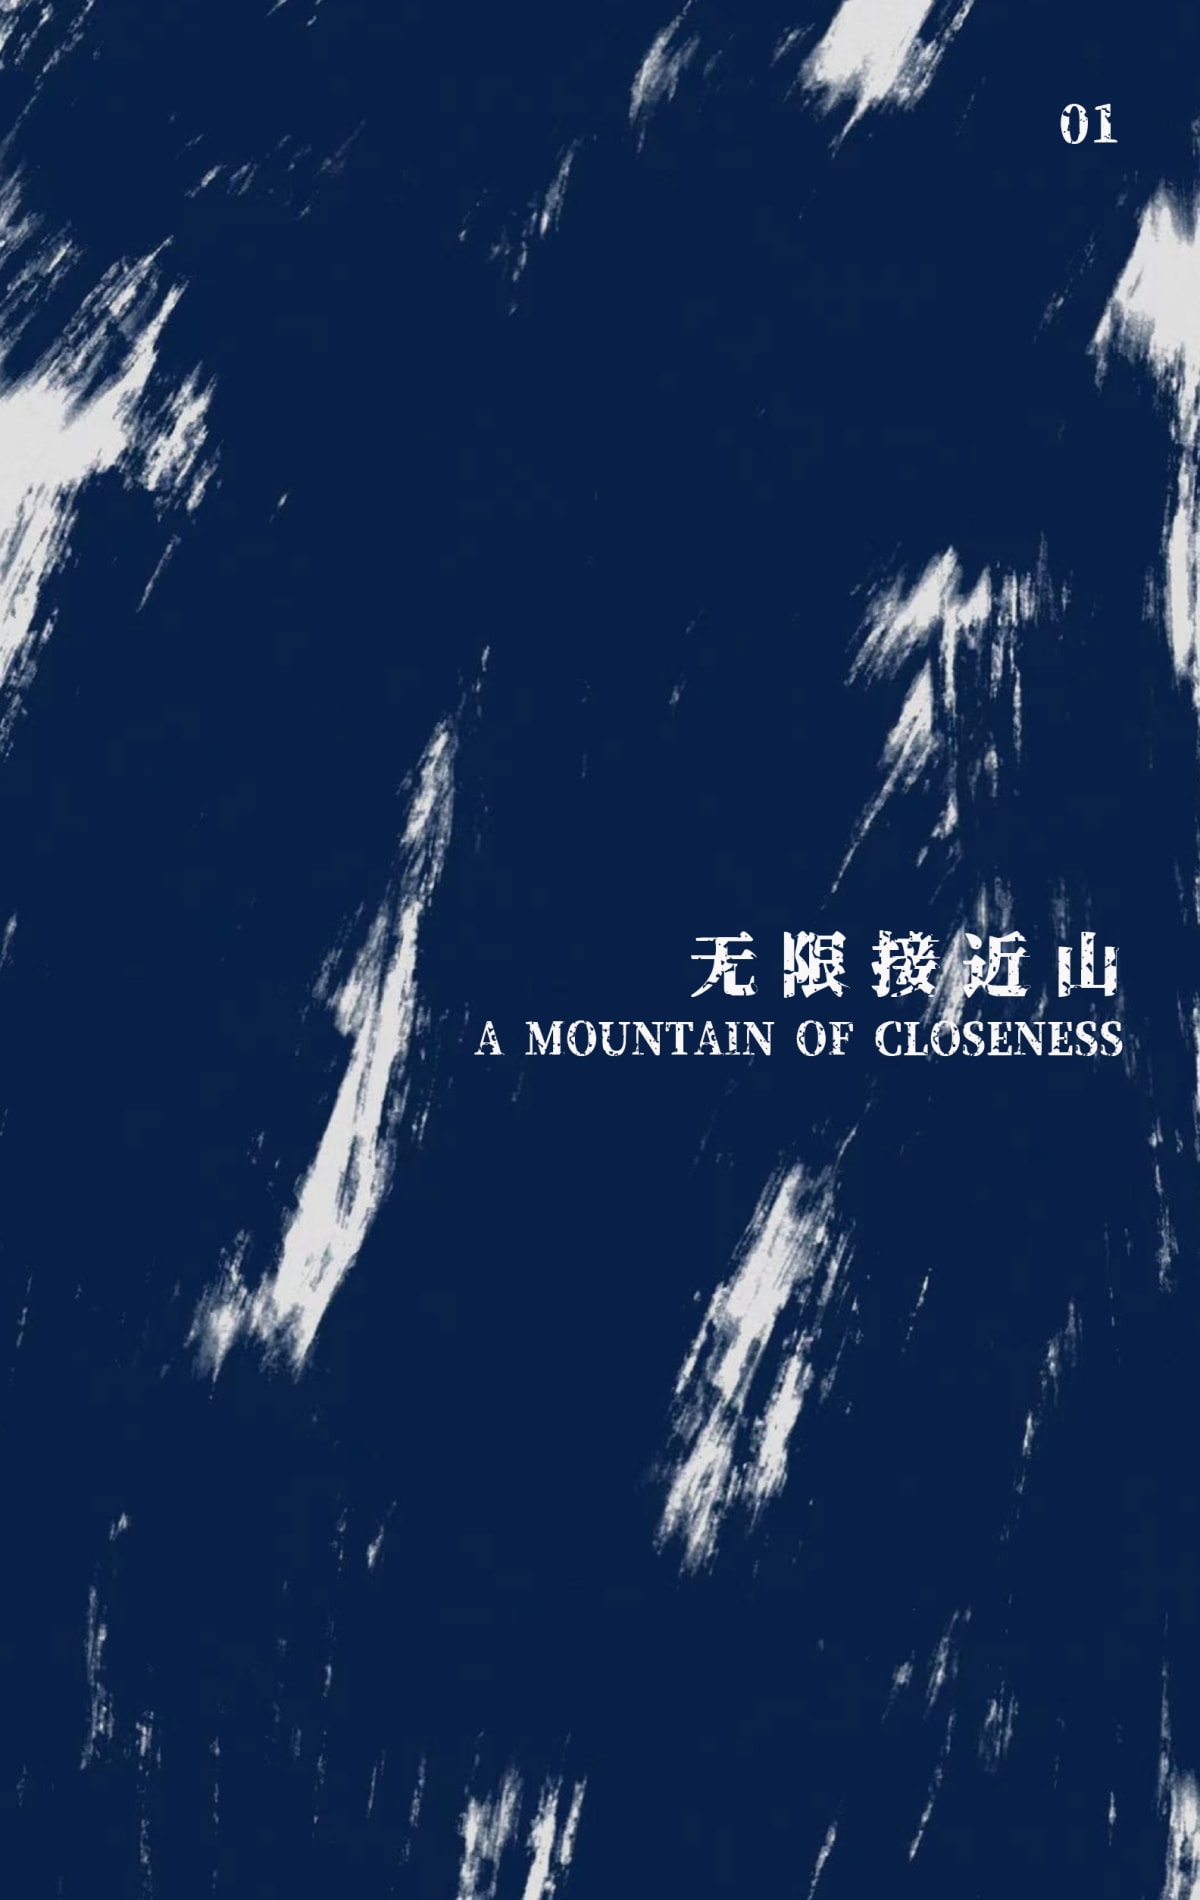 Yao Cong | Artist Book “A Mountain Of Closeness”